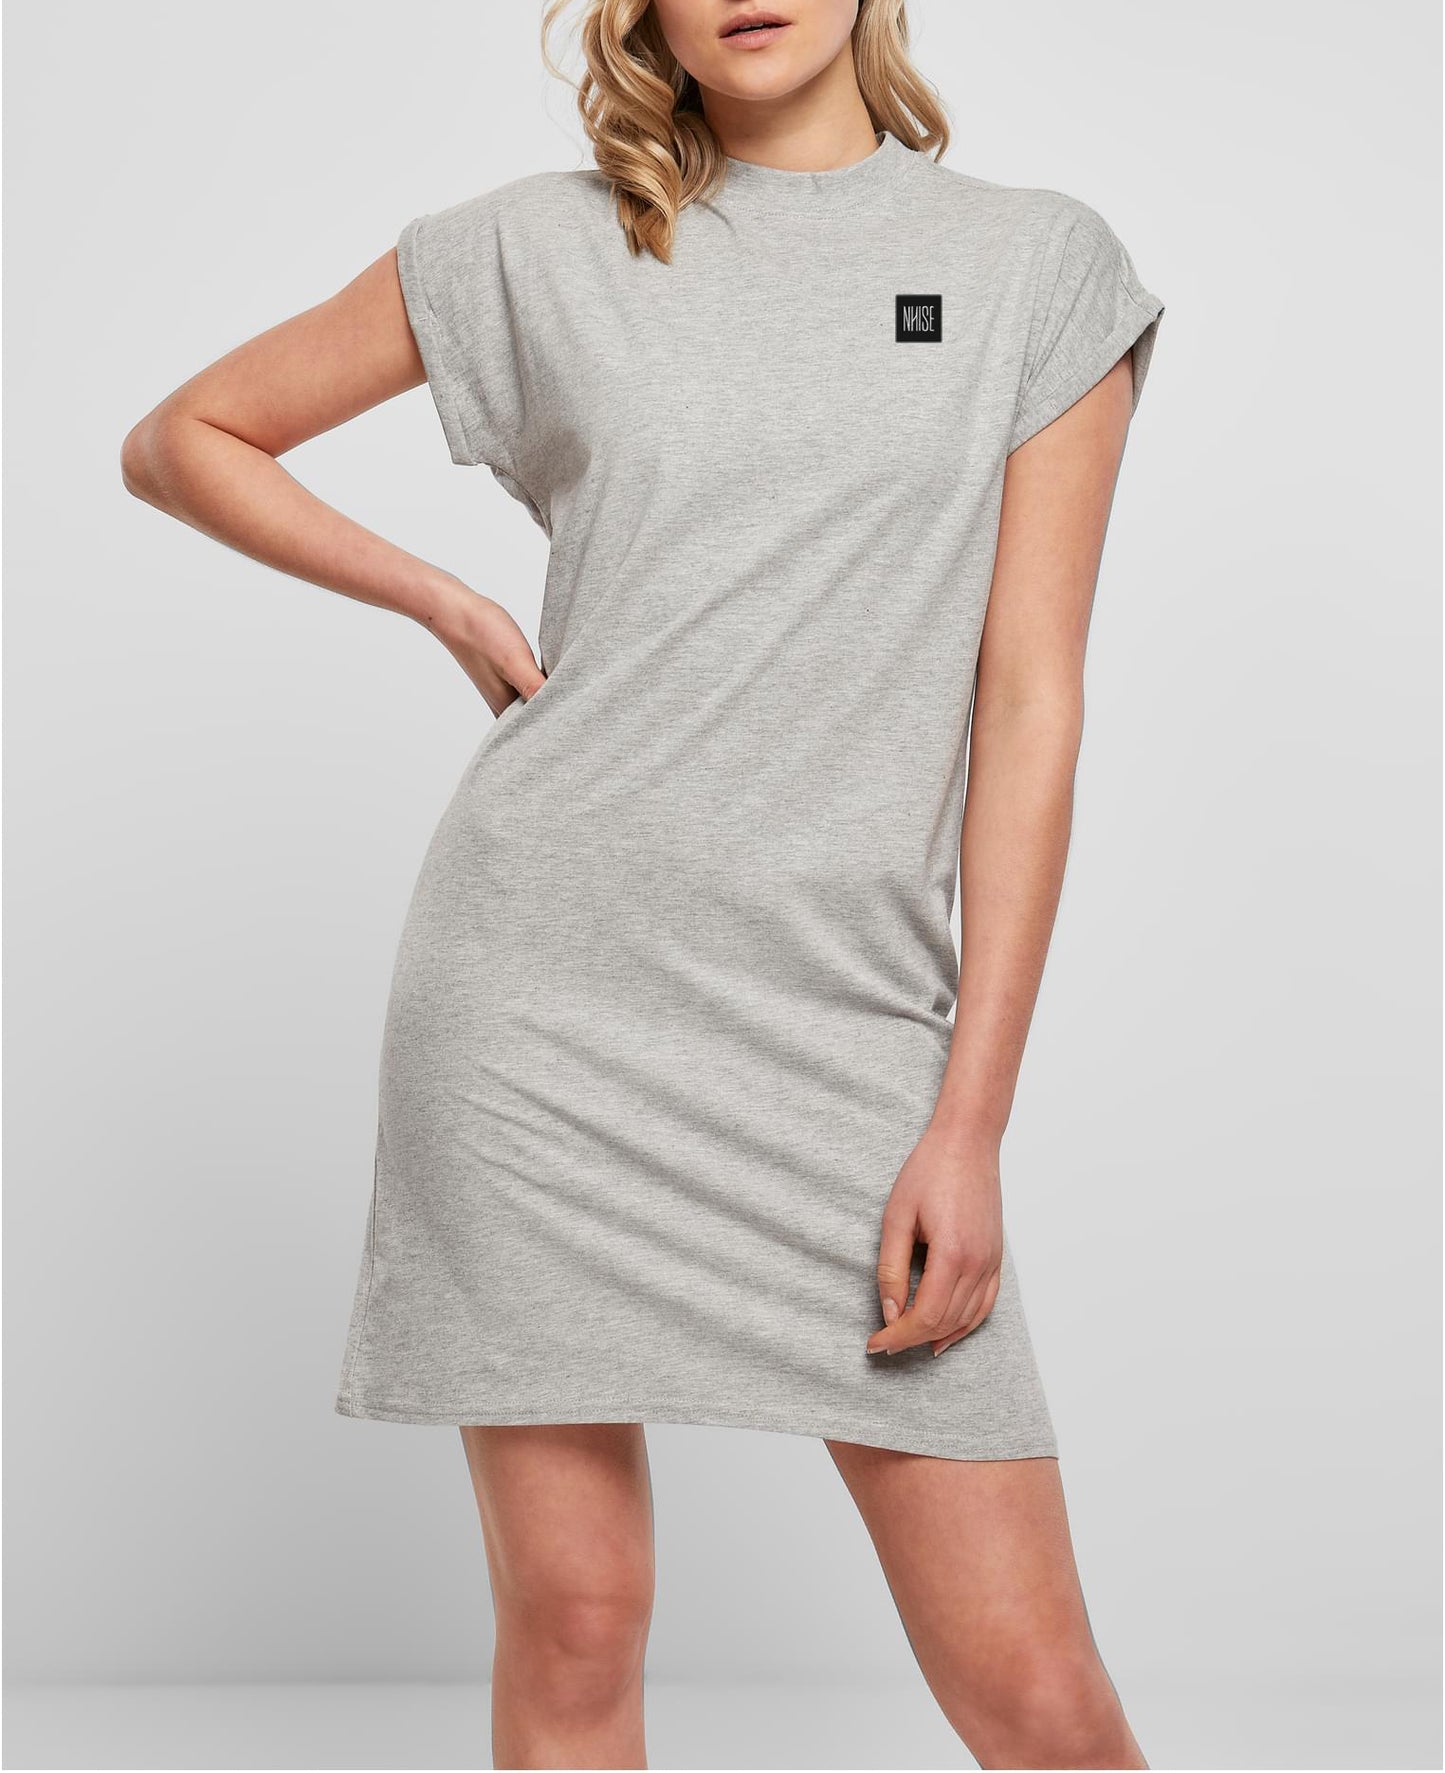 Basic "grey" Shoulder Dress Tee